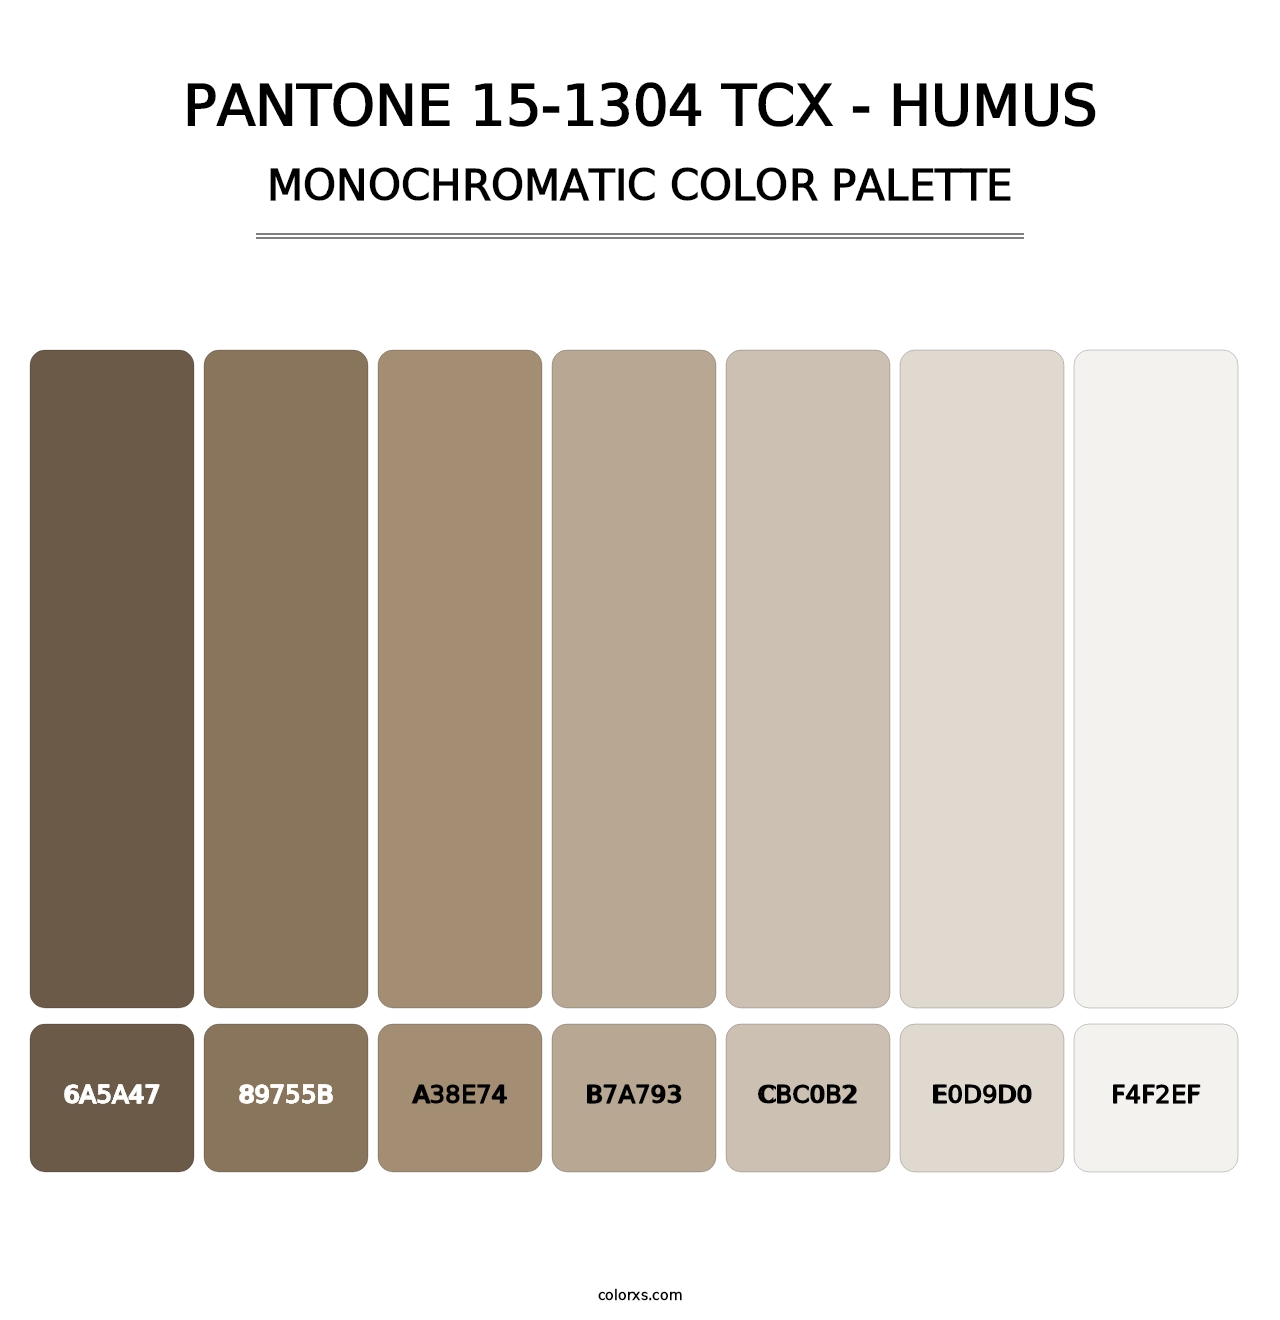 PANTONE 15-1304 TCX - Humus - Monochromatic Color Palette